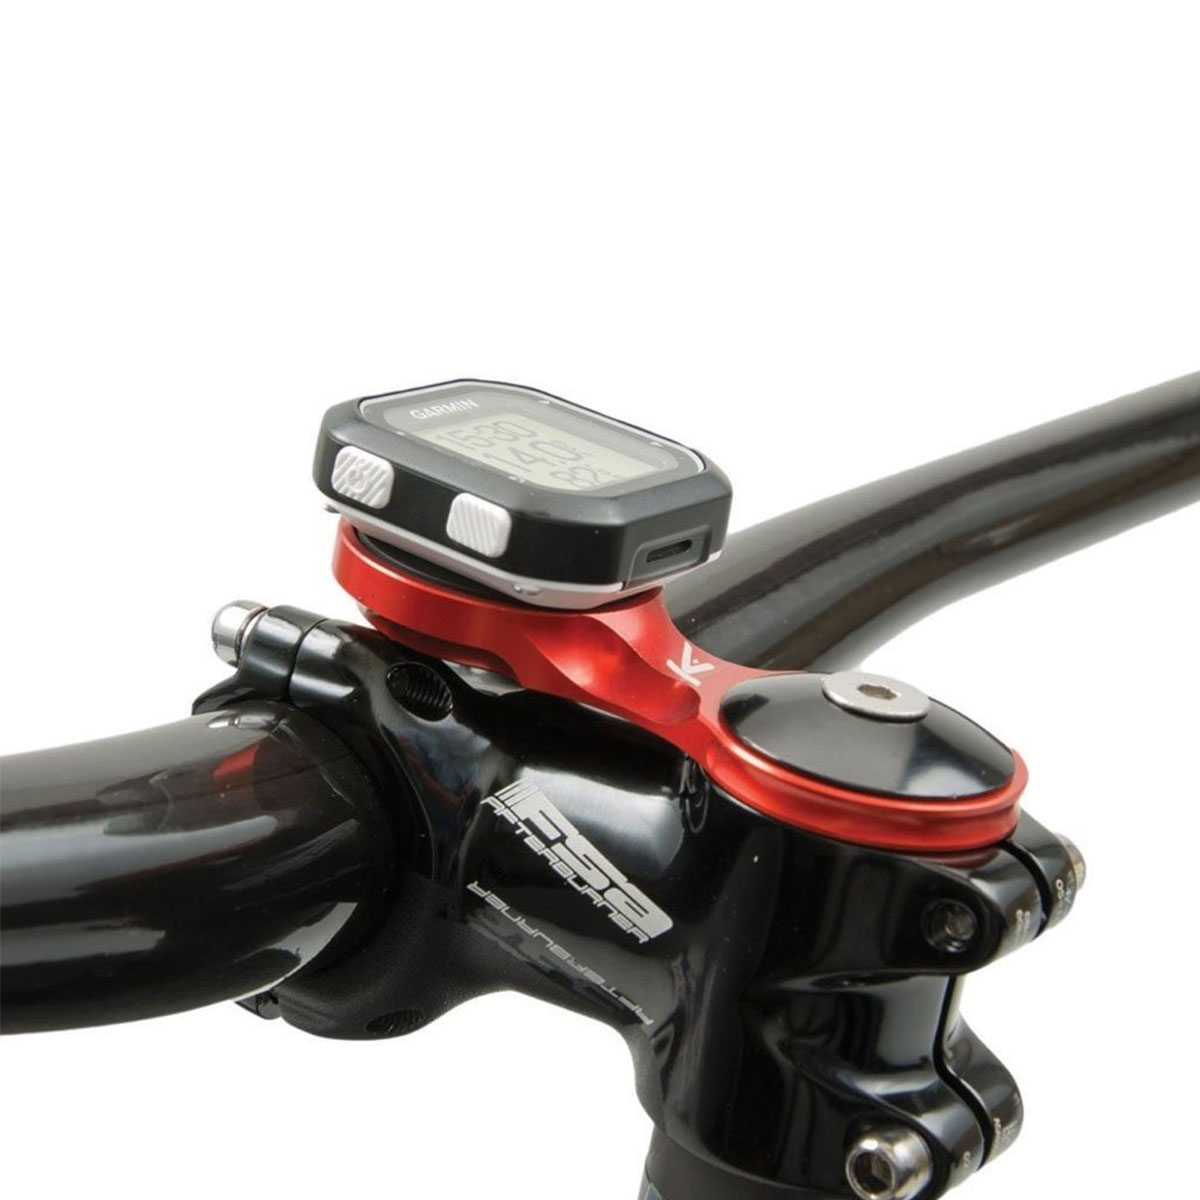 Eastern Power - Soporte para bicicleta para Garmin Edge 200, 500, 510, 800,  810, 1000, 1000 GPS, color rojo y negro